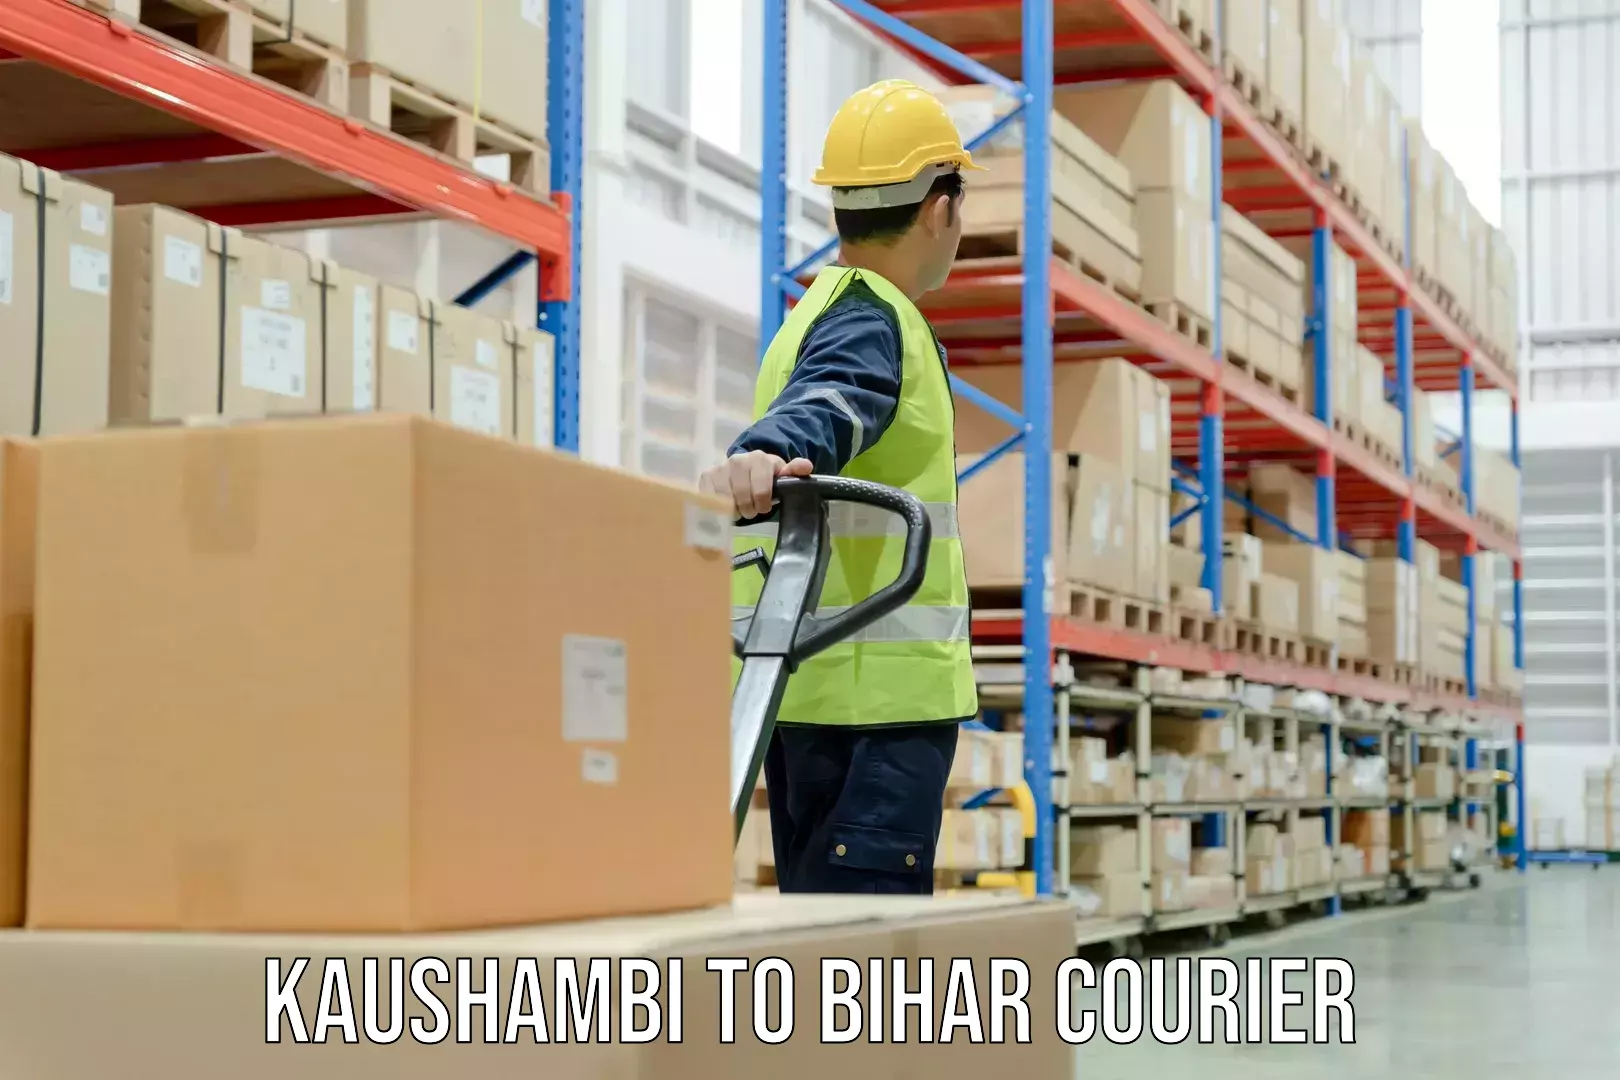 Express logistics providers Kaushambi to Bharwara